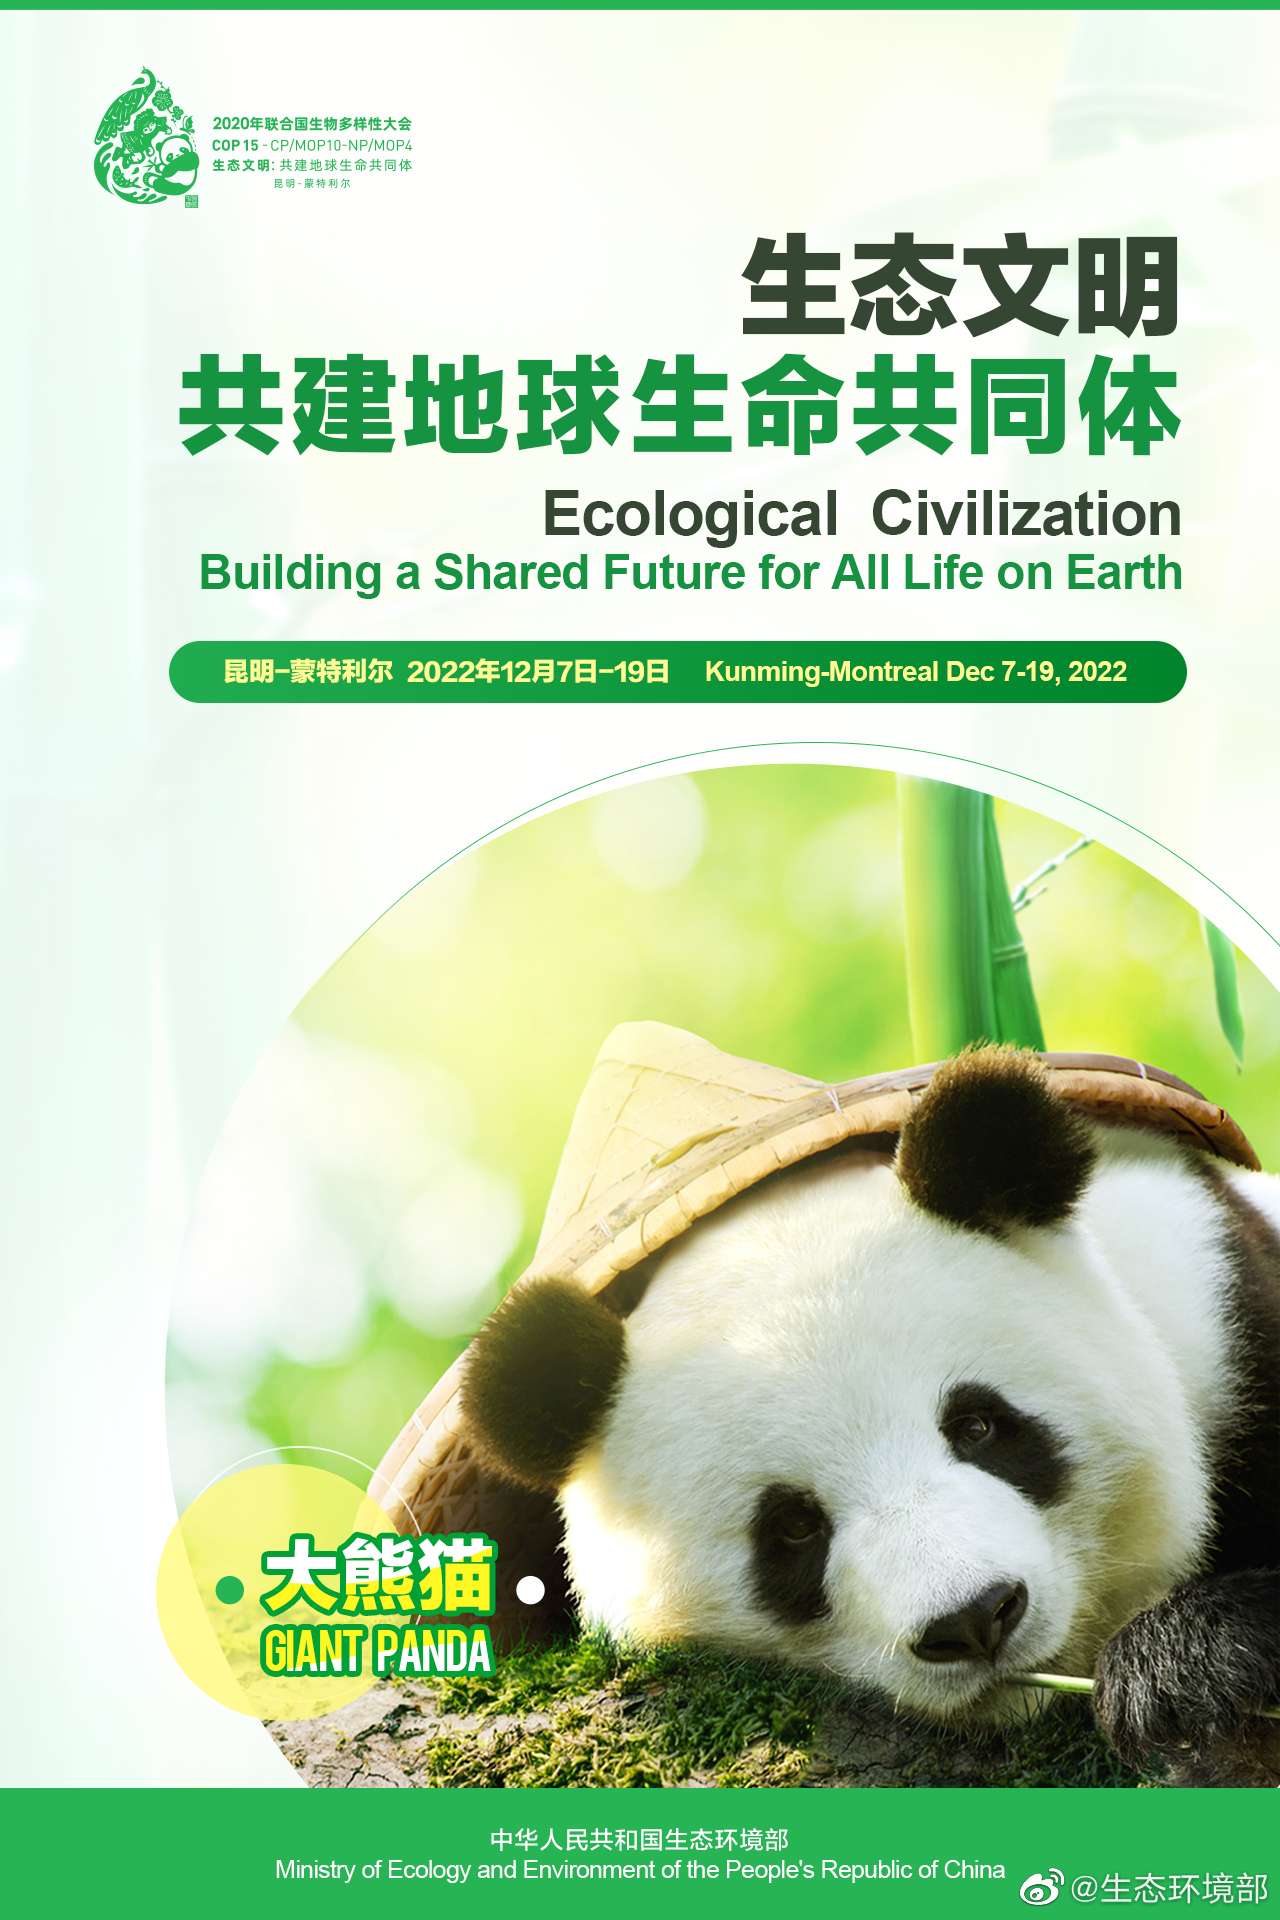 COP15中国宣传海报发布